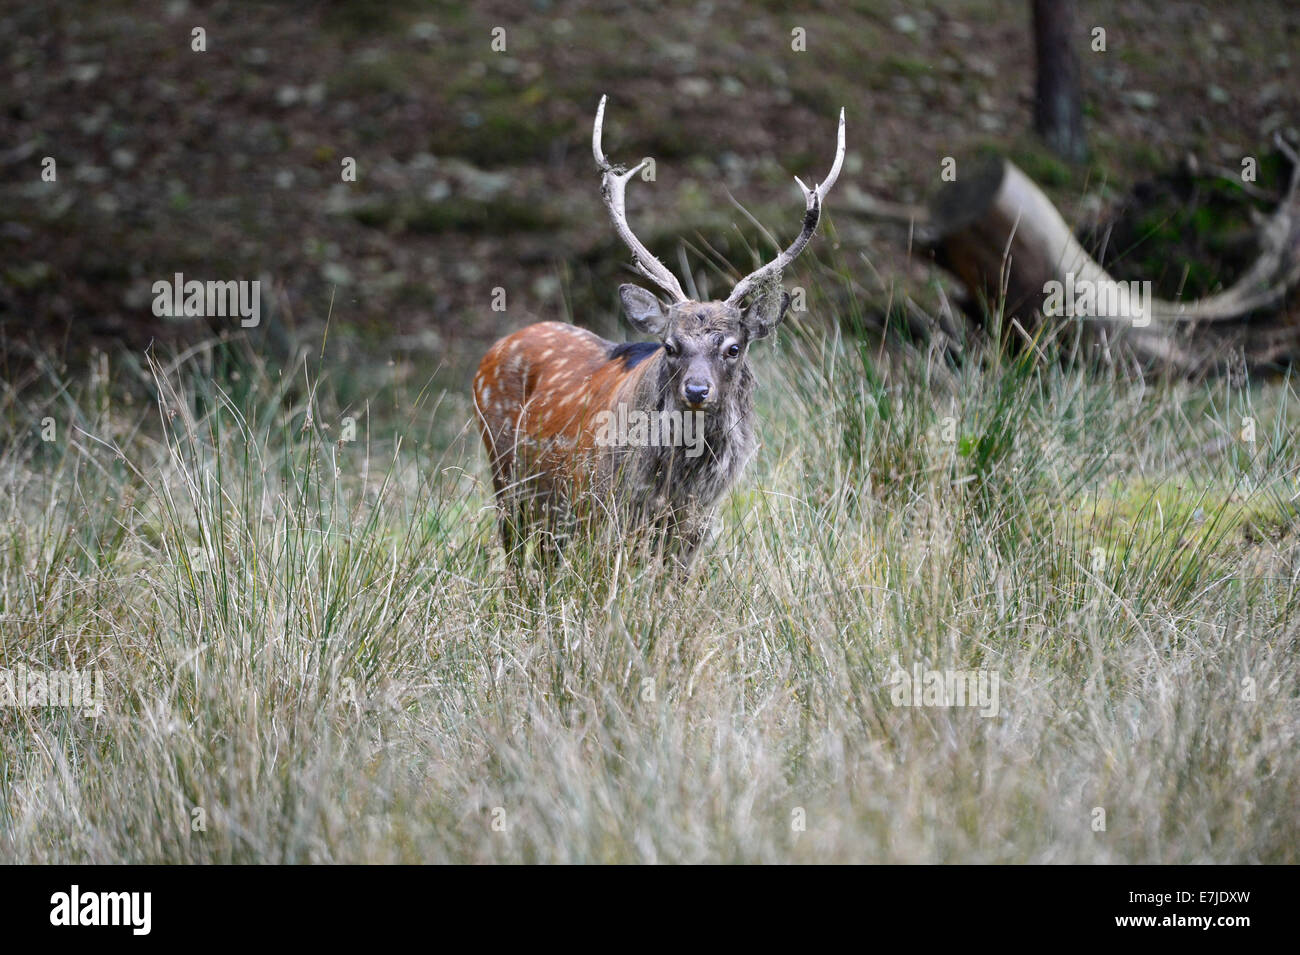 Japanese deer, spotted deer, deer, stag, Sika, Cervus nippon, Asian deer, deer, stags, rutting season, Germany, Europe, Stock Photo